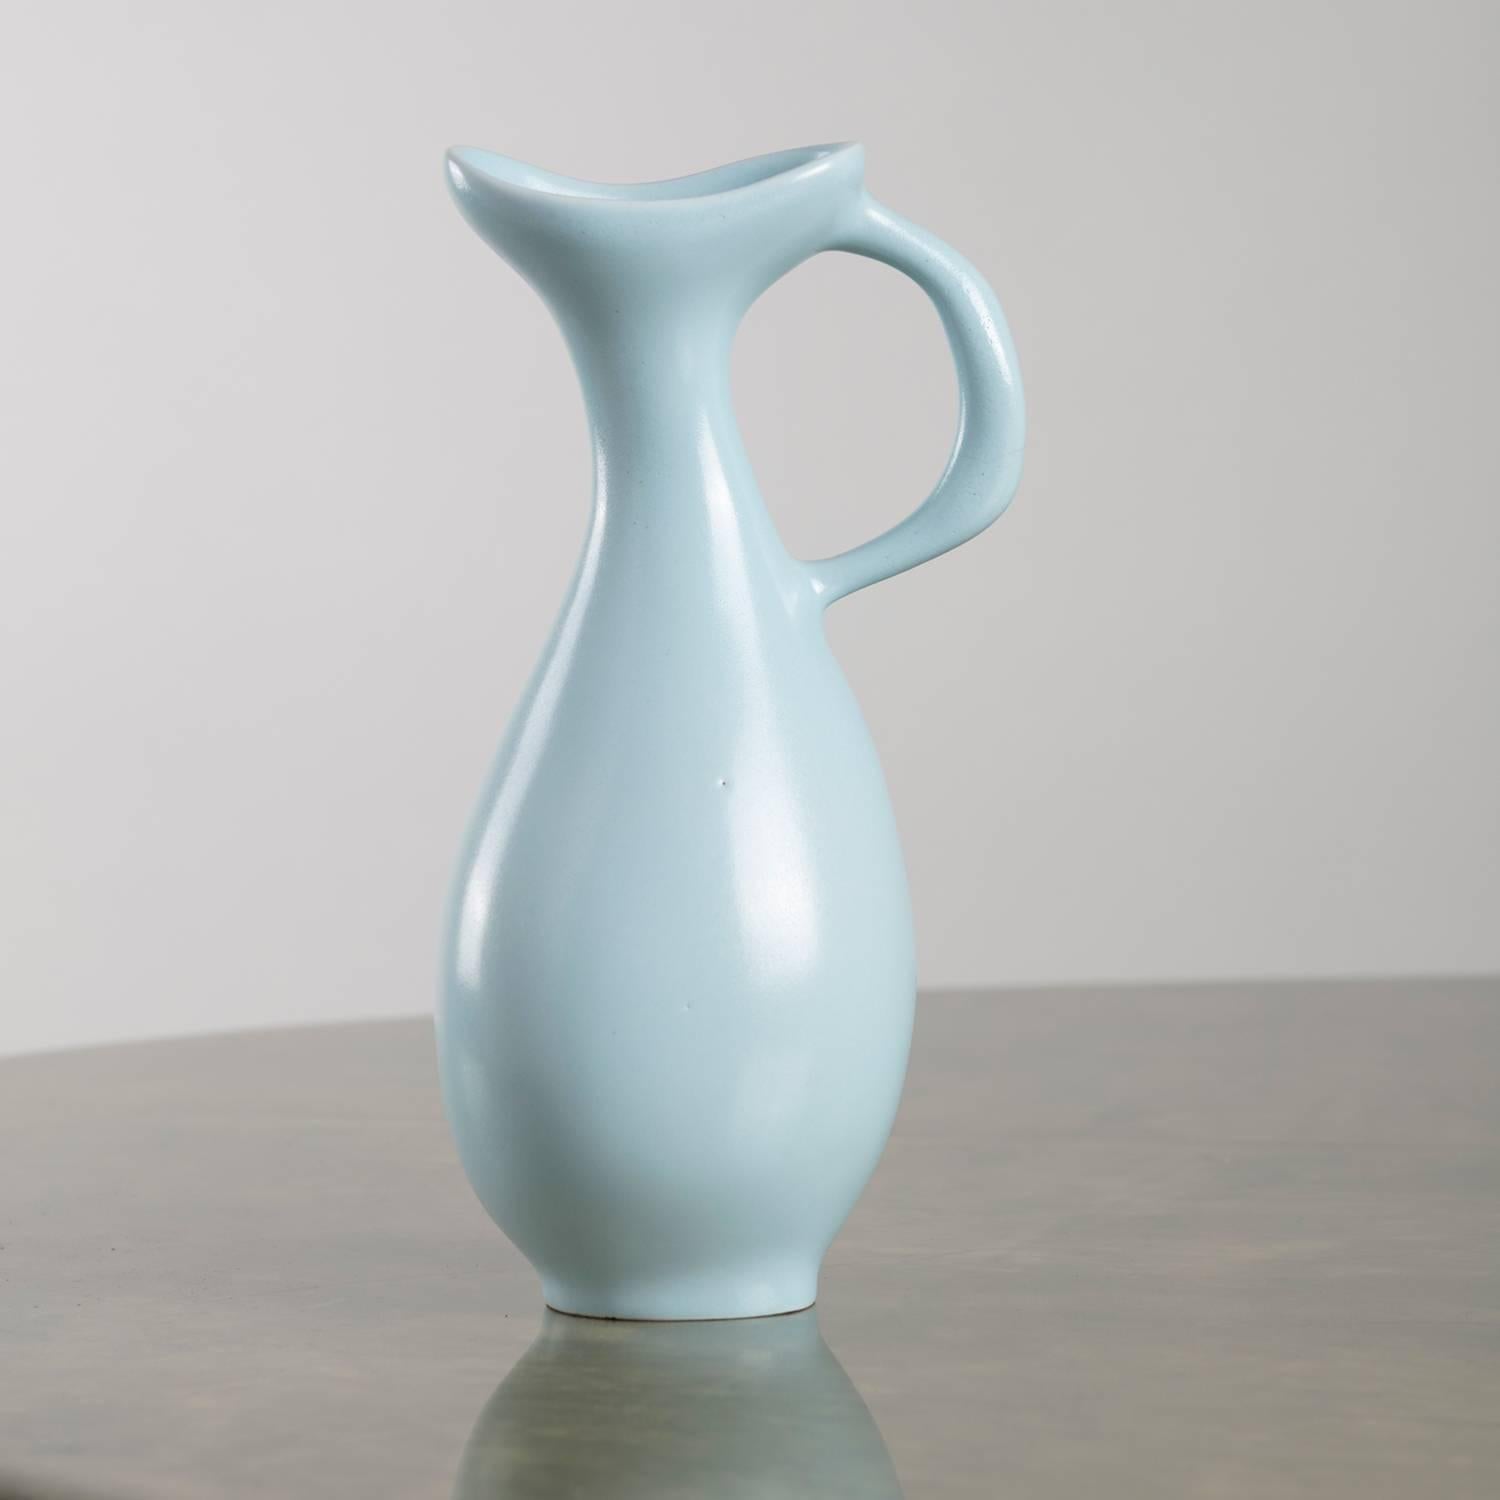 Ceramic vase model 